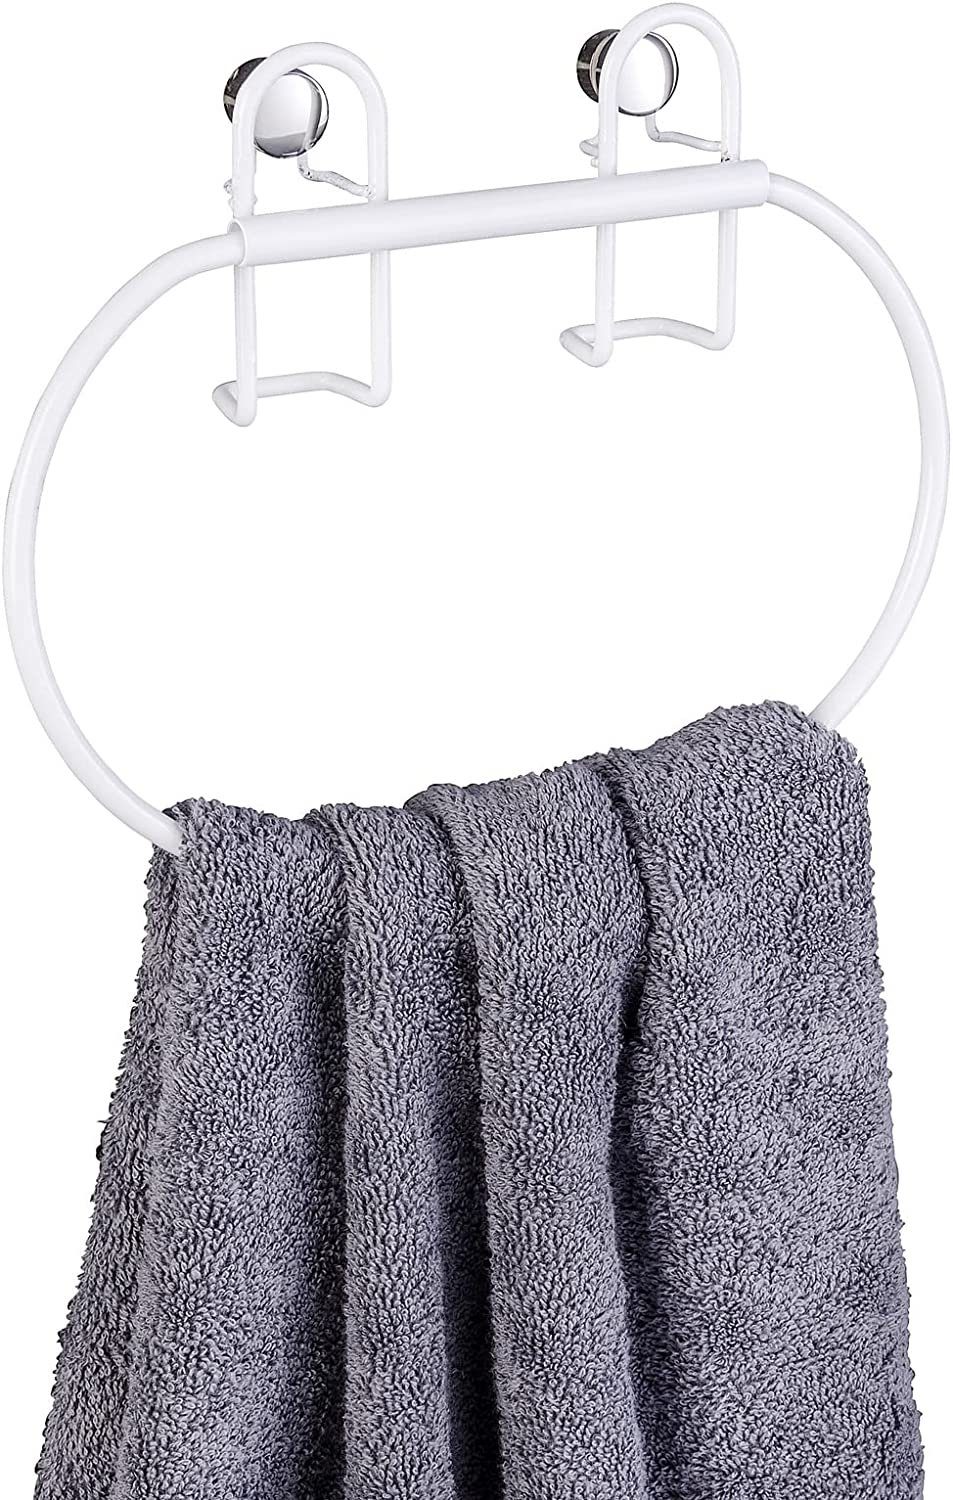 Handtuchhalter weiß Classic Handtuchring in Rostschutz Plus, WENKO mit hochwertigem